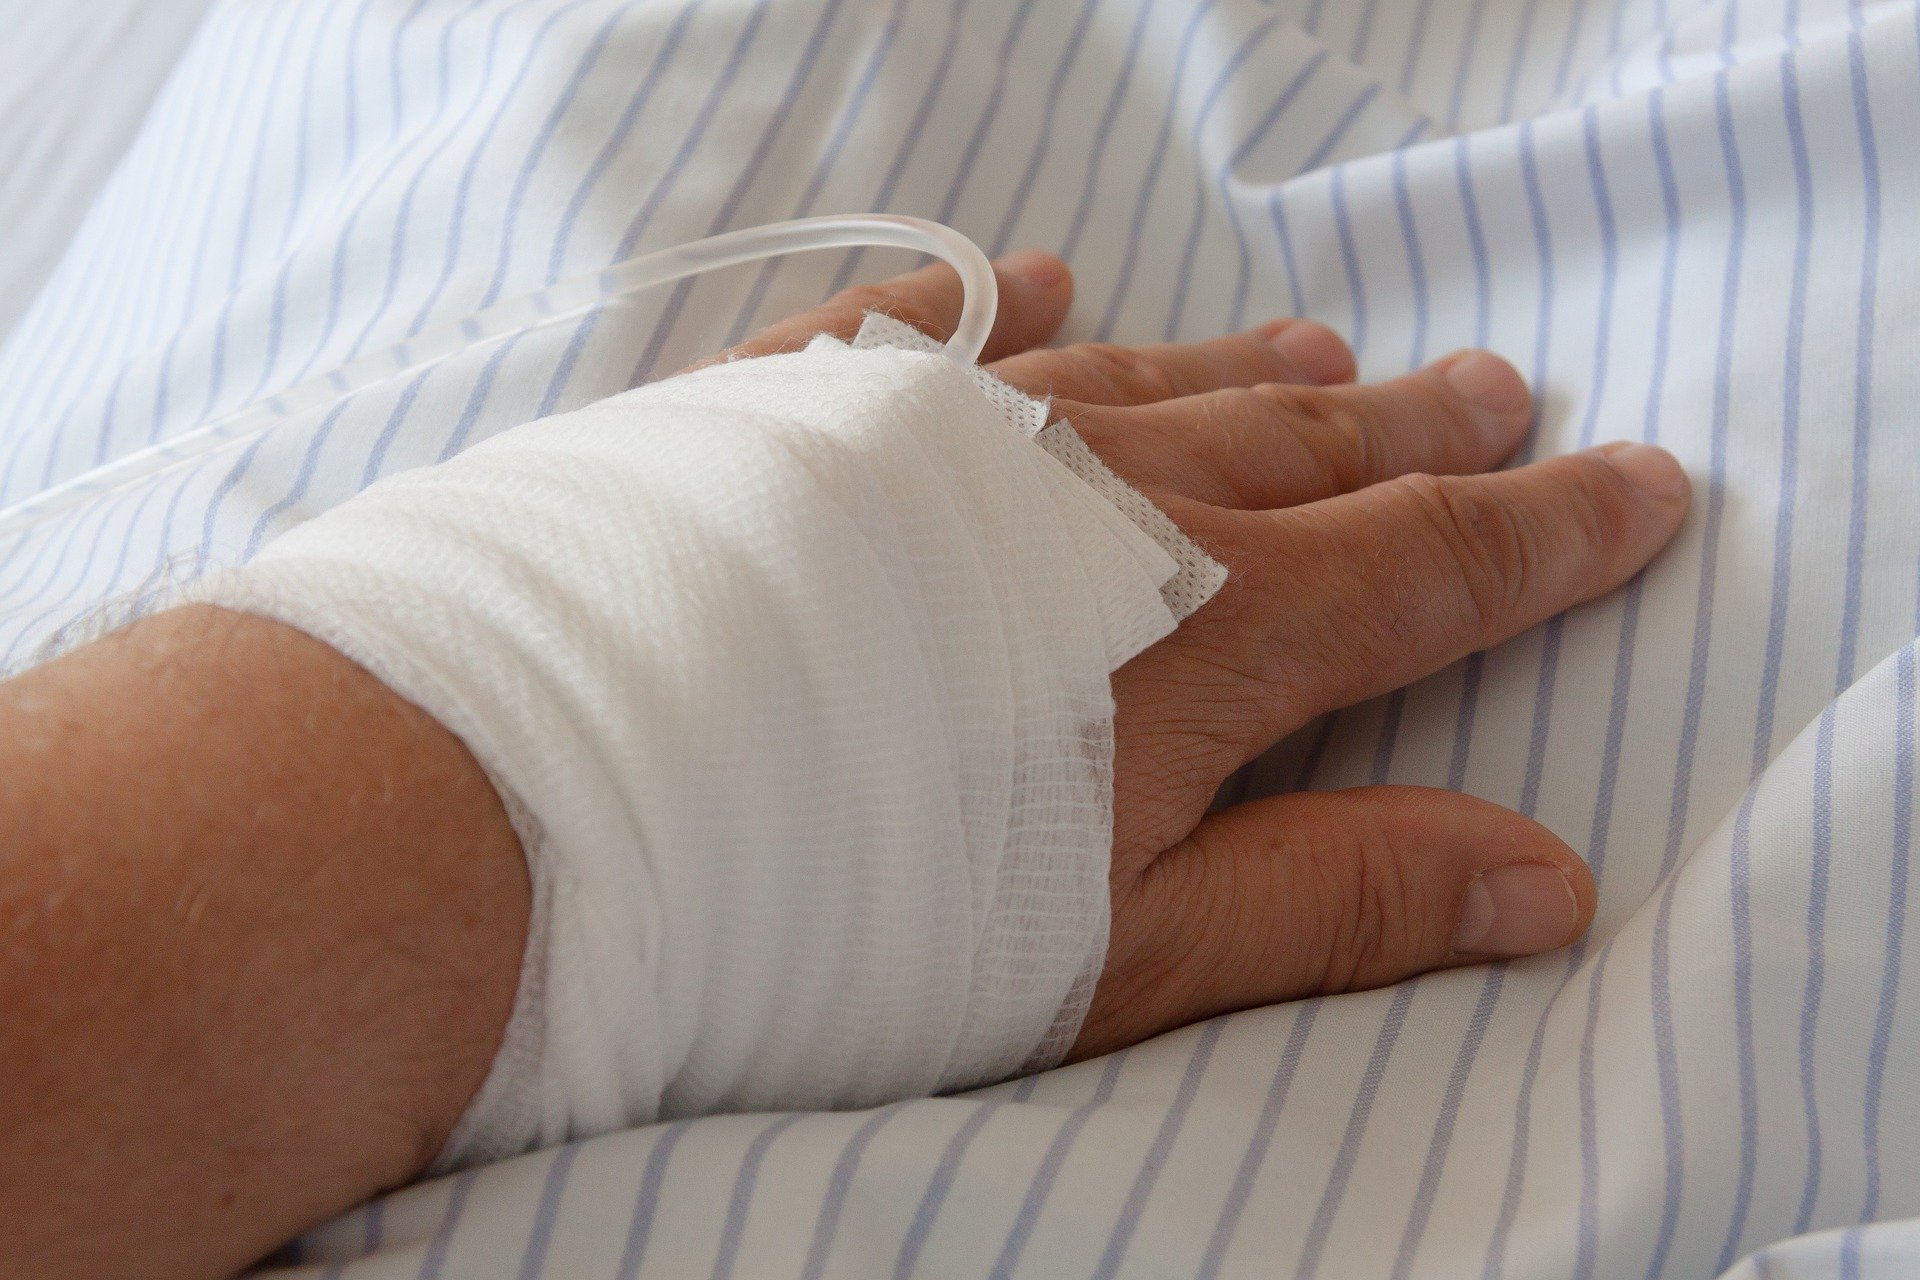 Bandaged hand on a hospital bed. | Photo: Pixabay